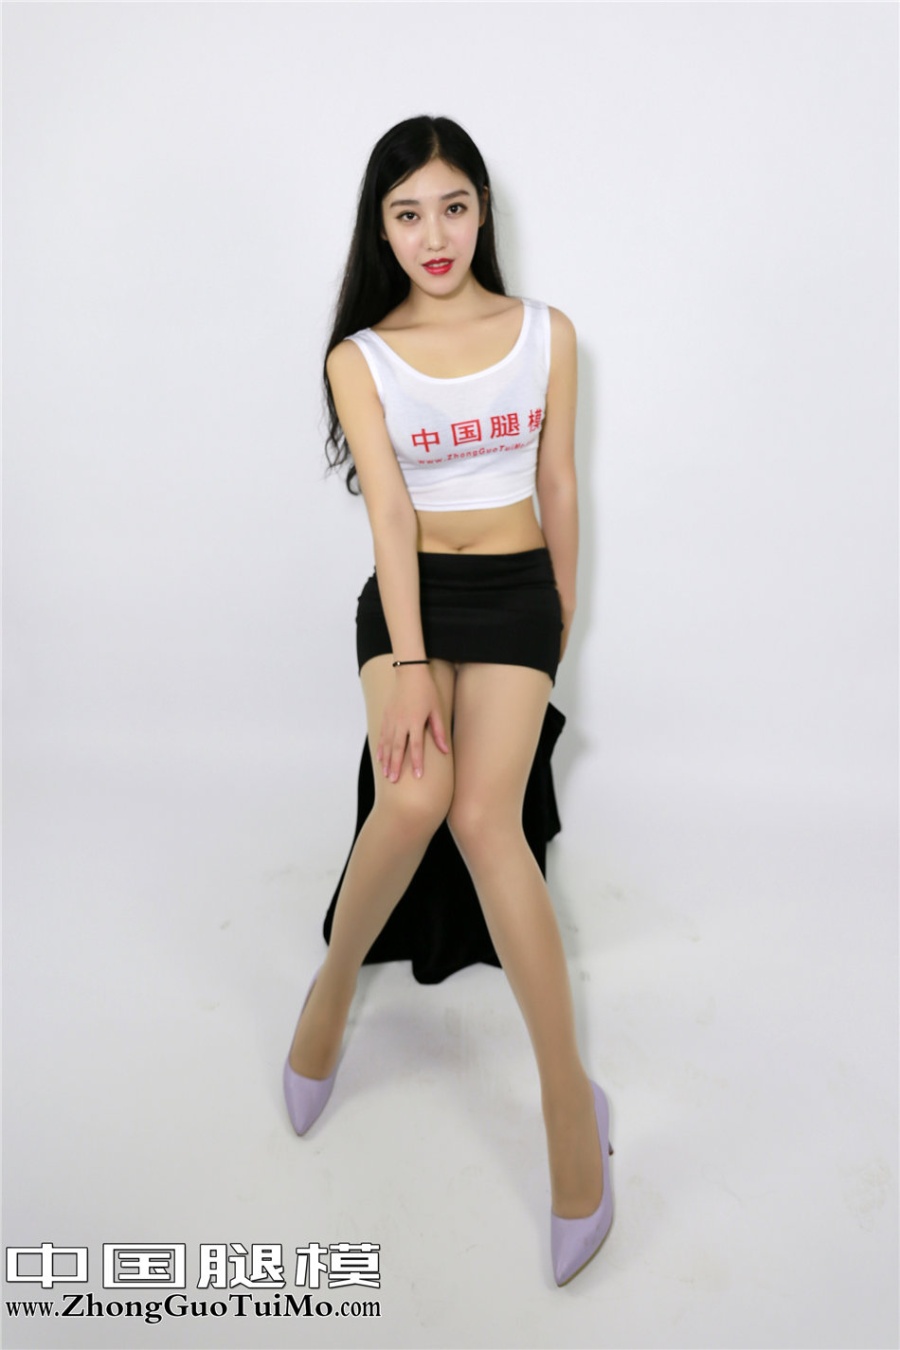 中国腿模美女小琦琦超短裙棚拍写真照片(第3页)